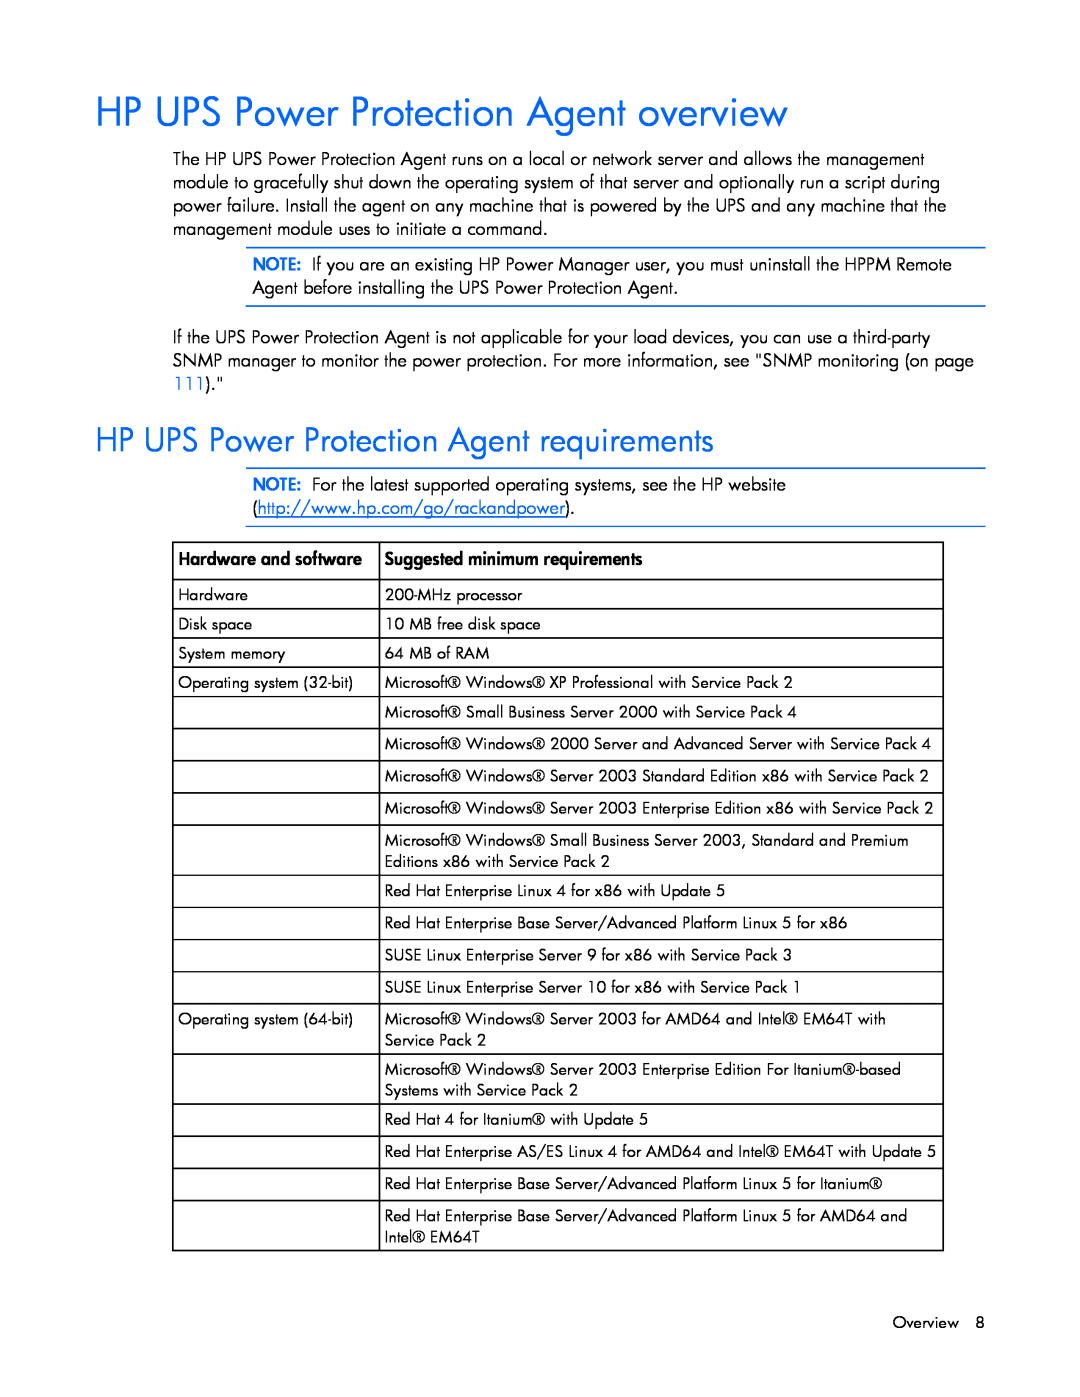 HP A1354A, A6584A, A1353A, A1356A, J4373A HP UPS Power Protection Agent overview, HP UPS Power Protection Agent requirements 